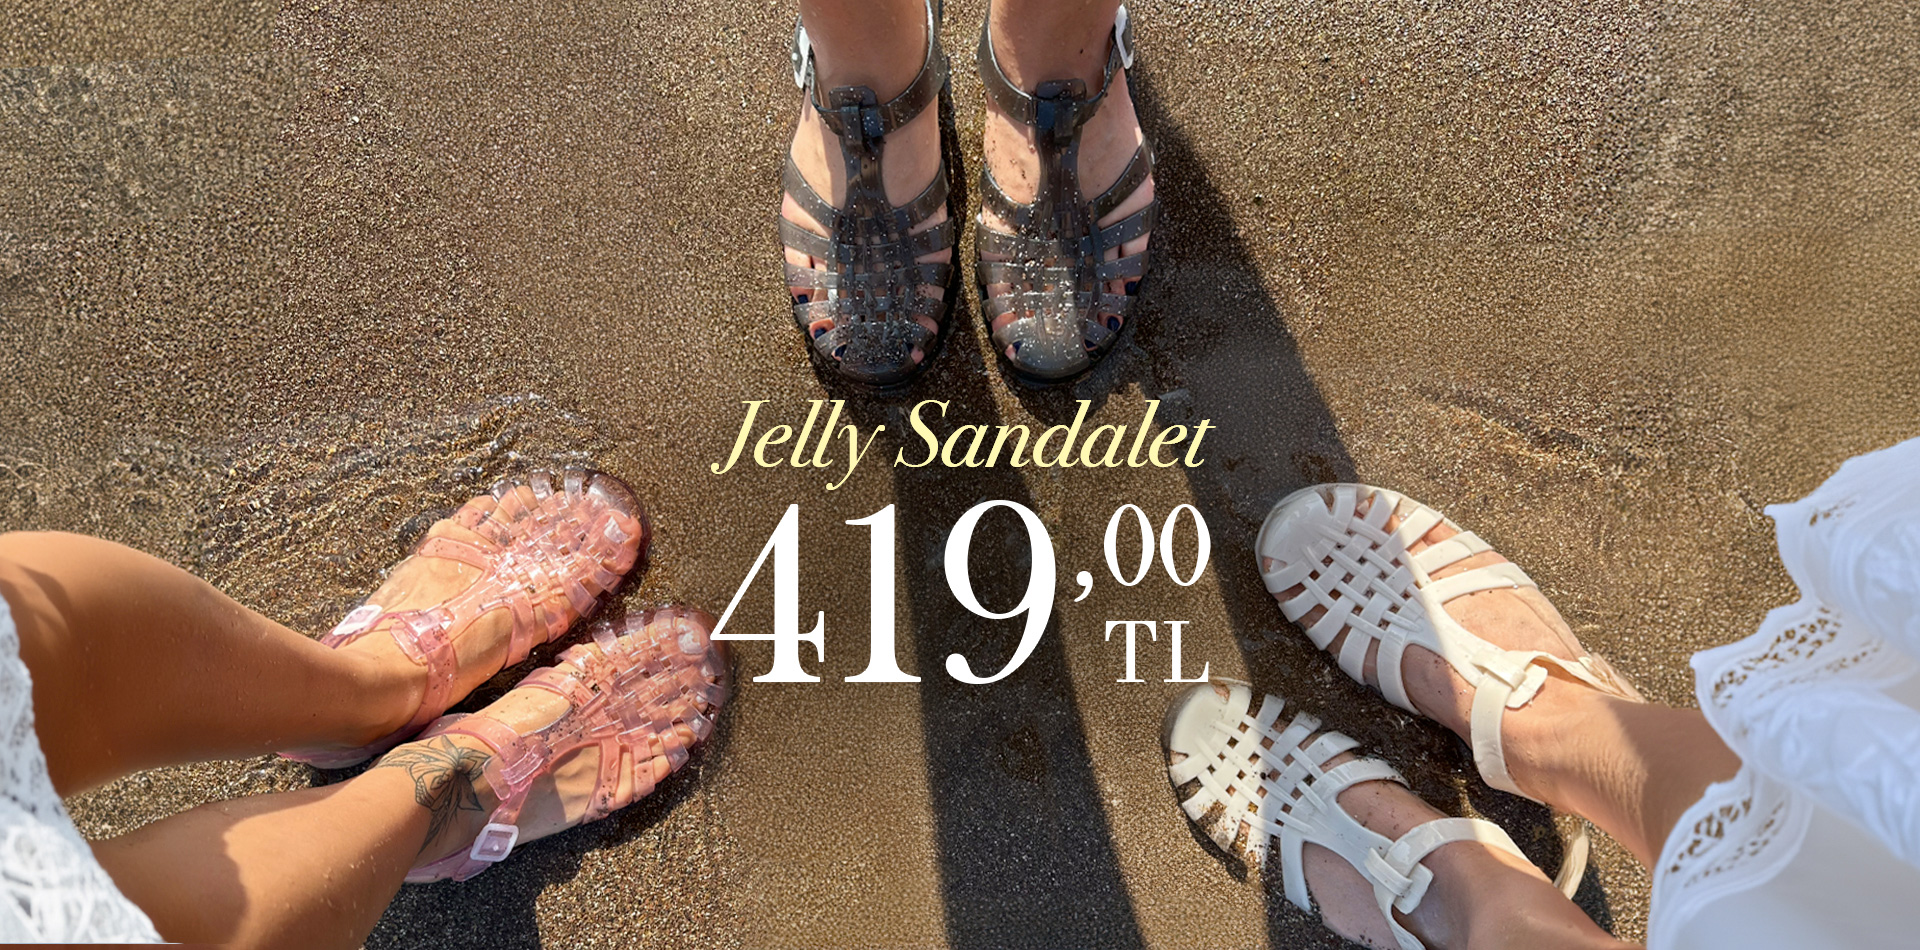 Jelly Sandalet